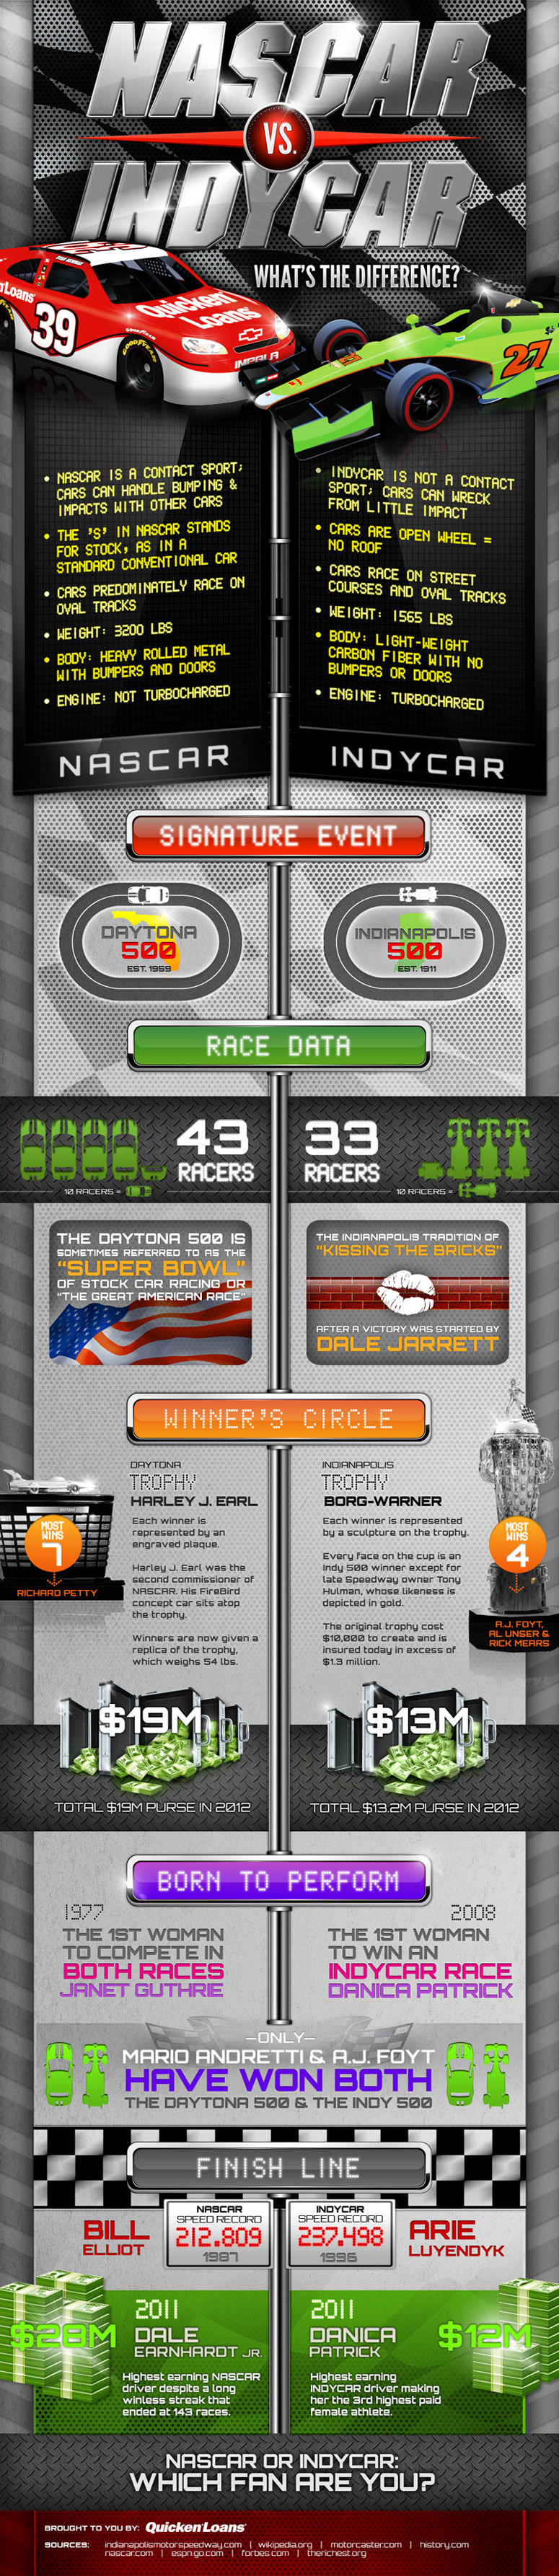 NASCAR vs INDY Car Racing 